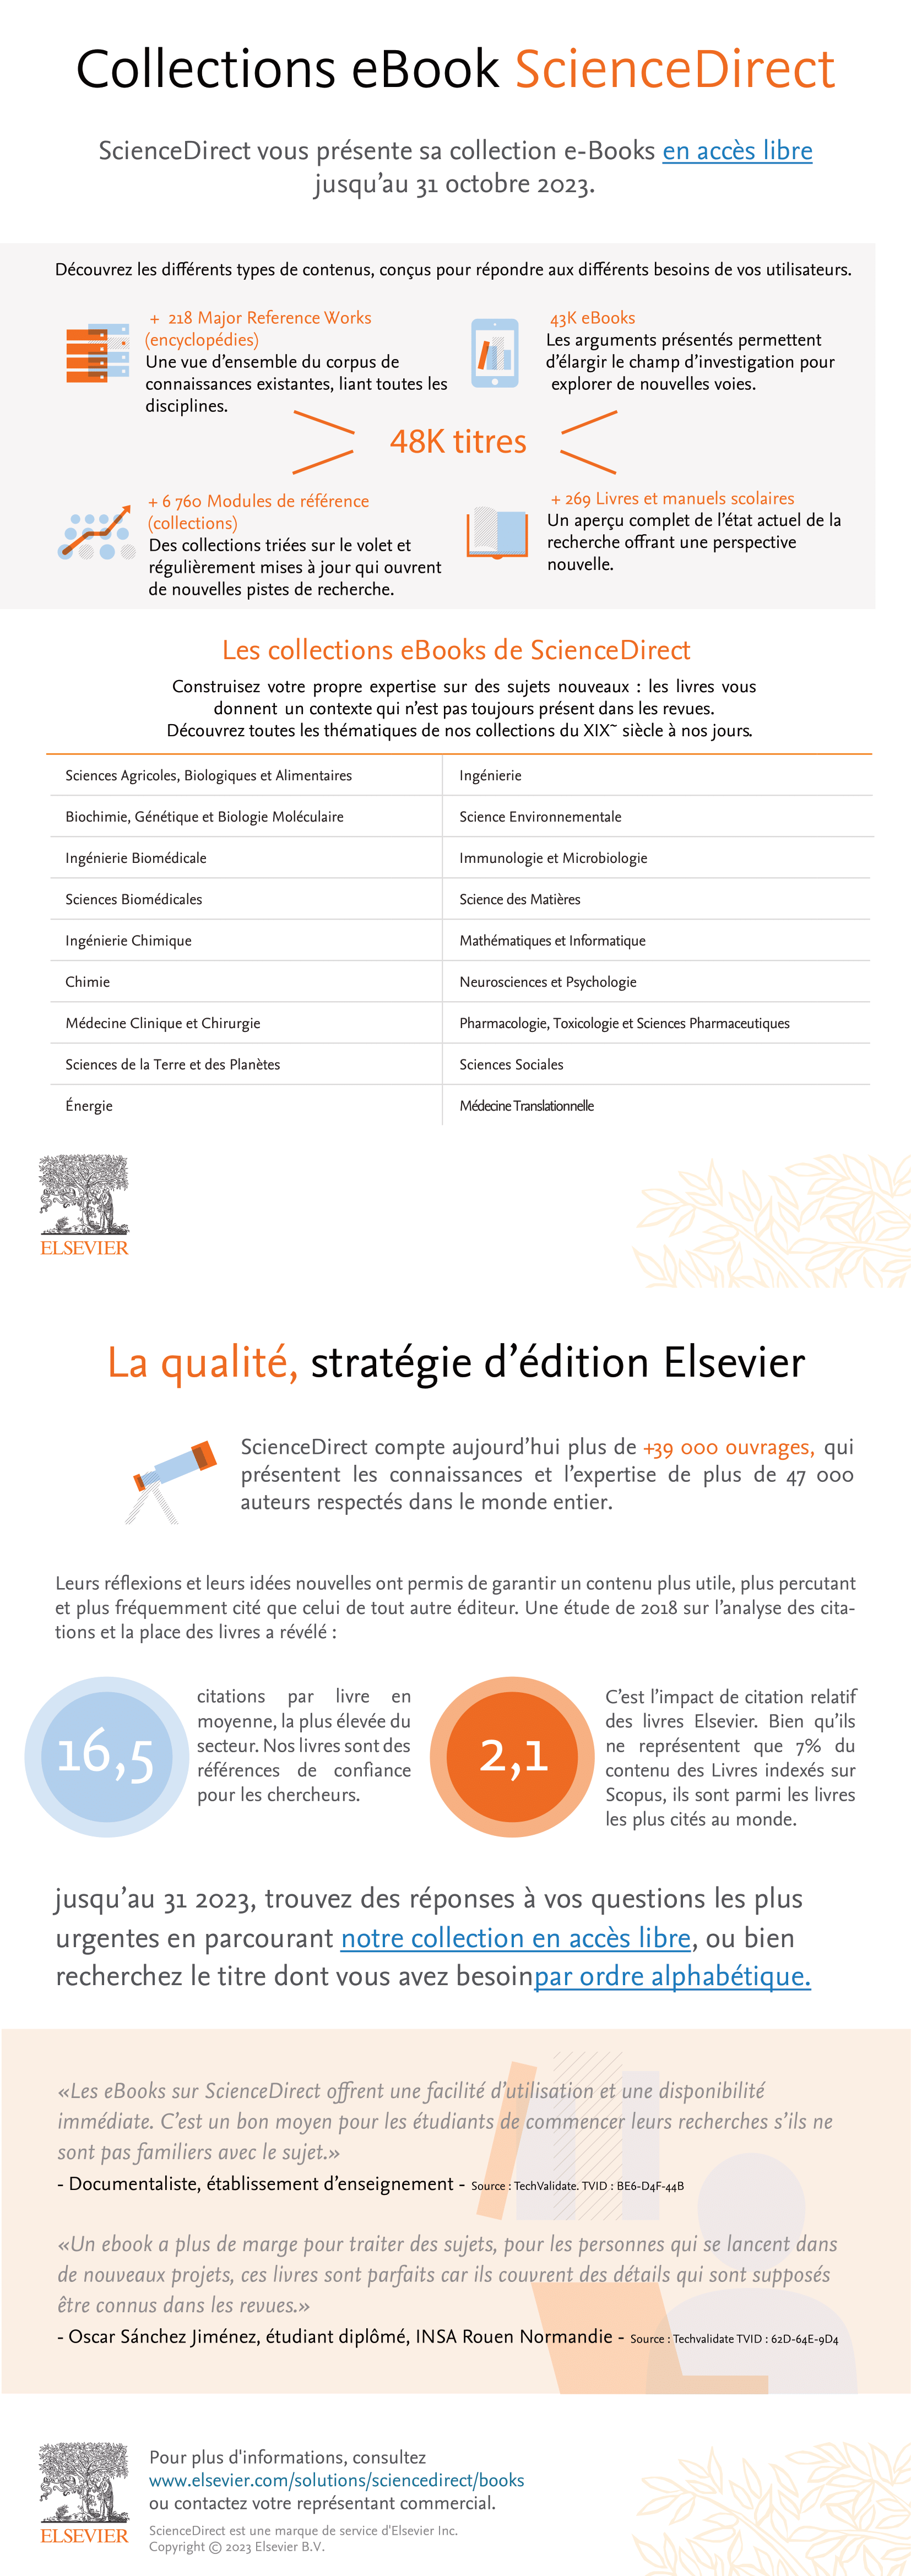 Elsevier free ebooks